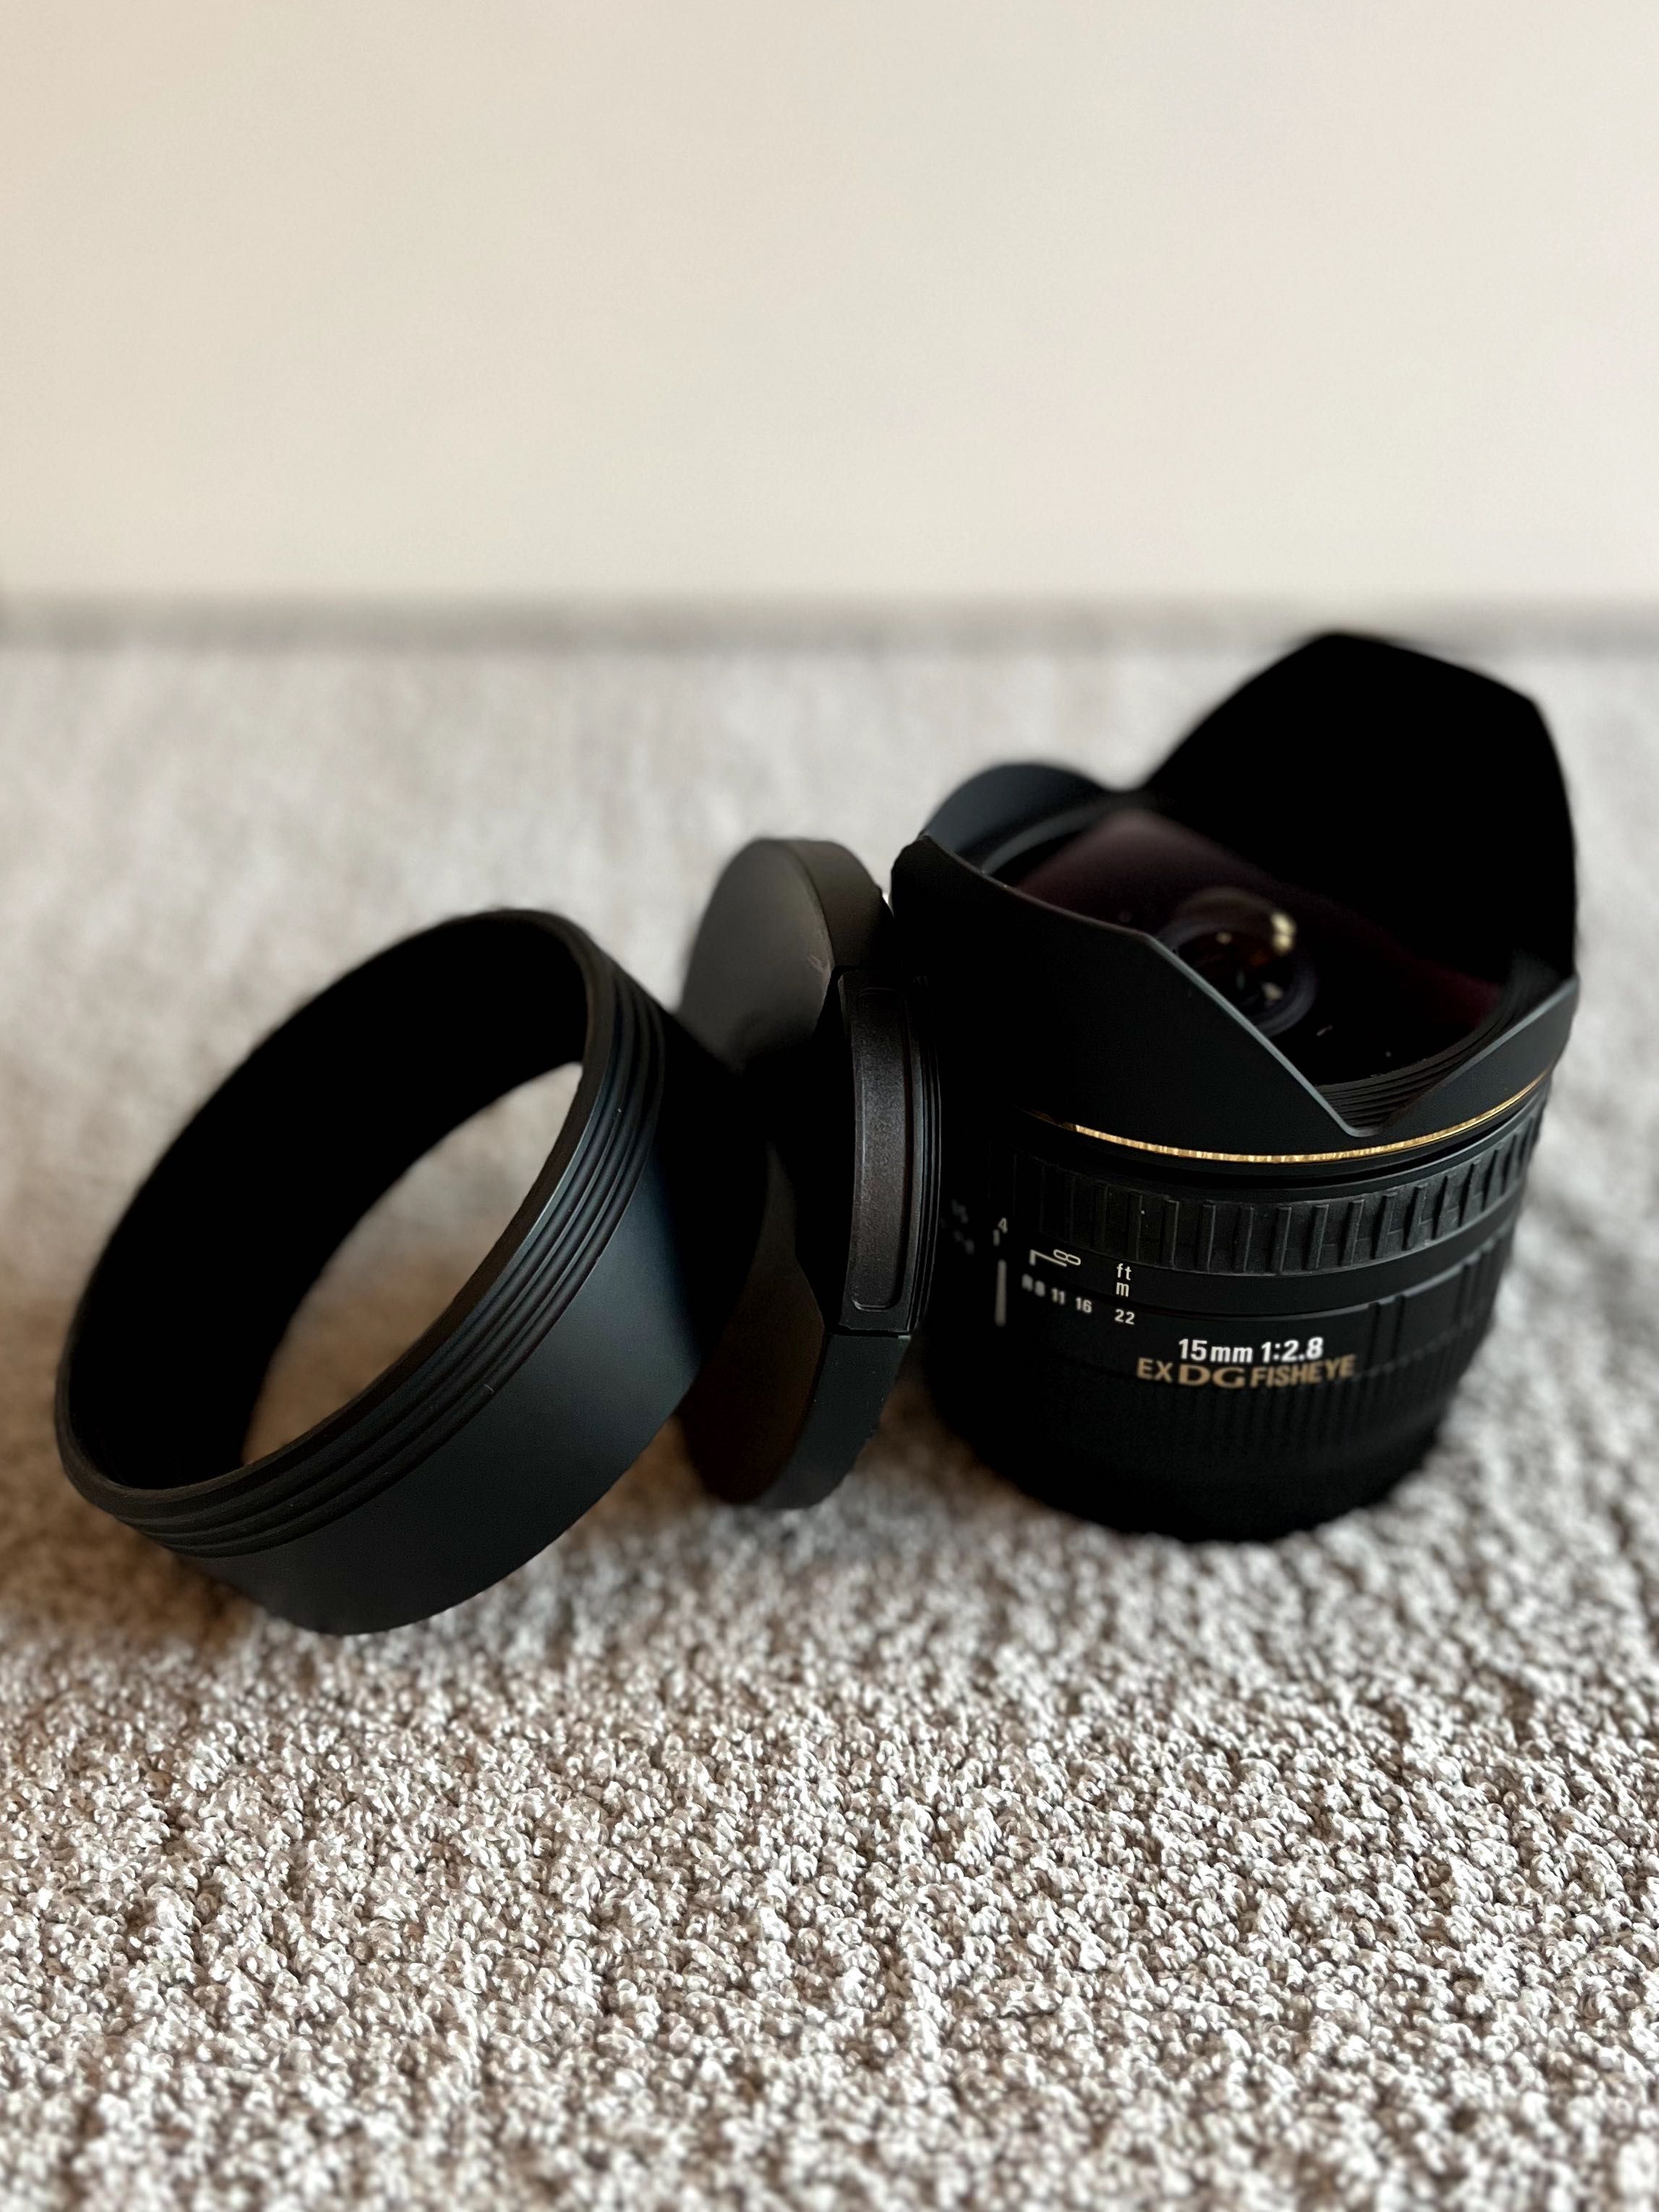 Objetiva Sigma 15mm F2.8 EX DG Olho de Peixe para Canon